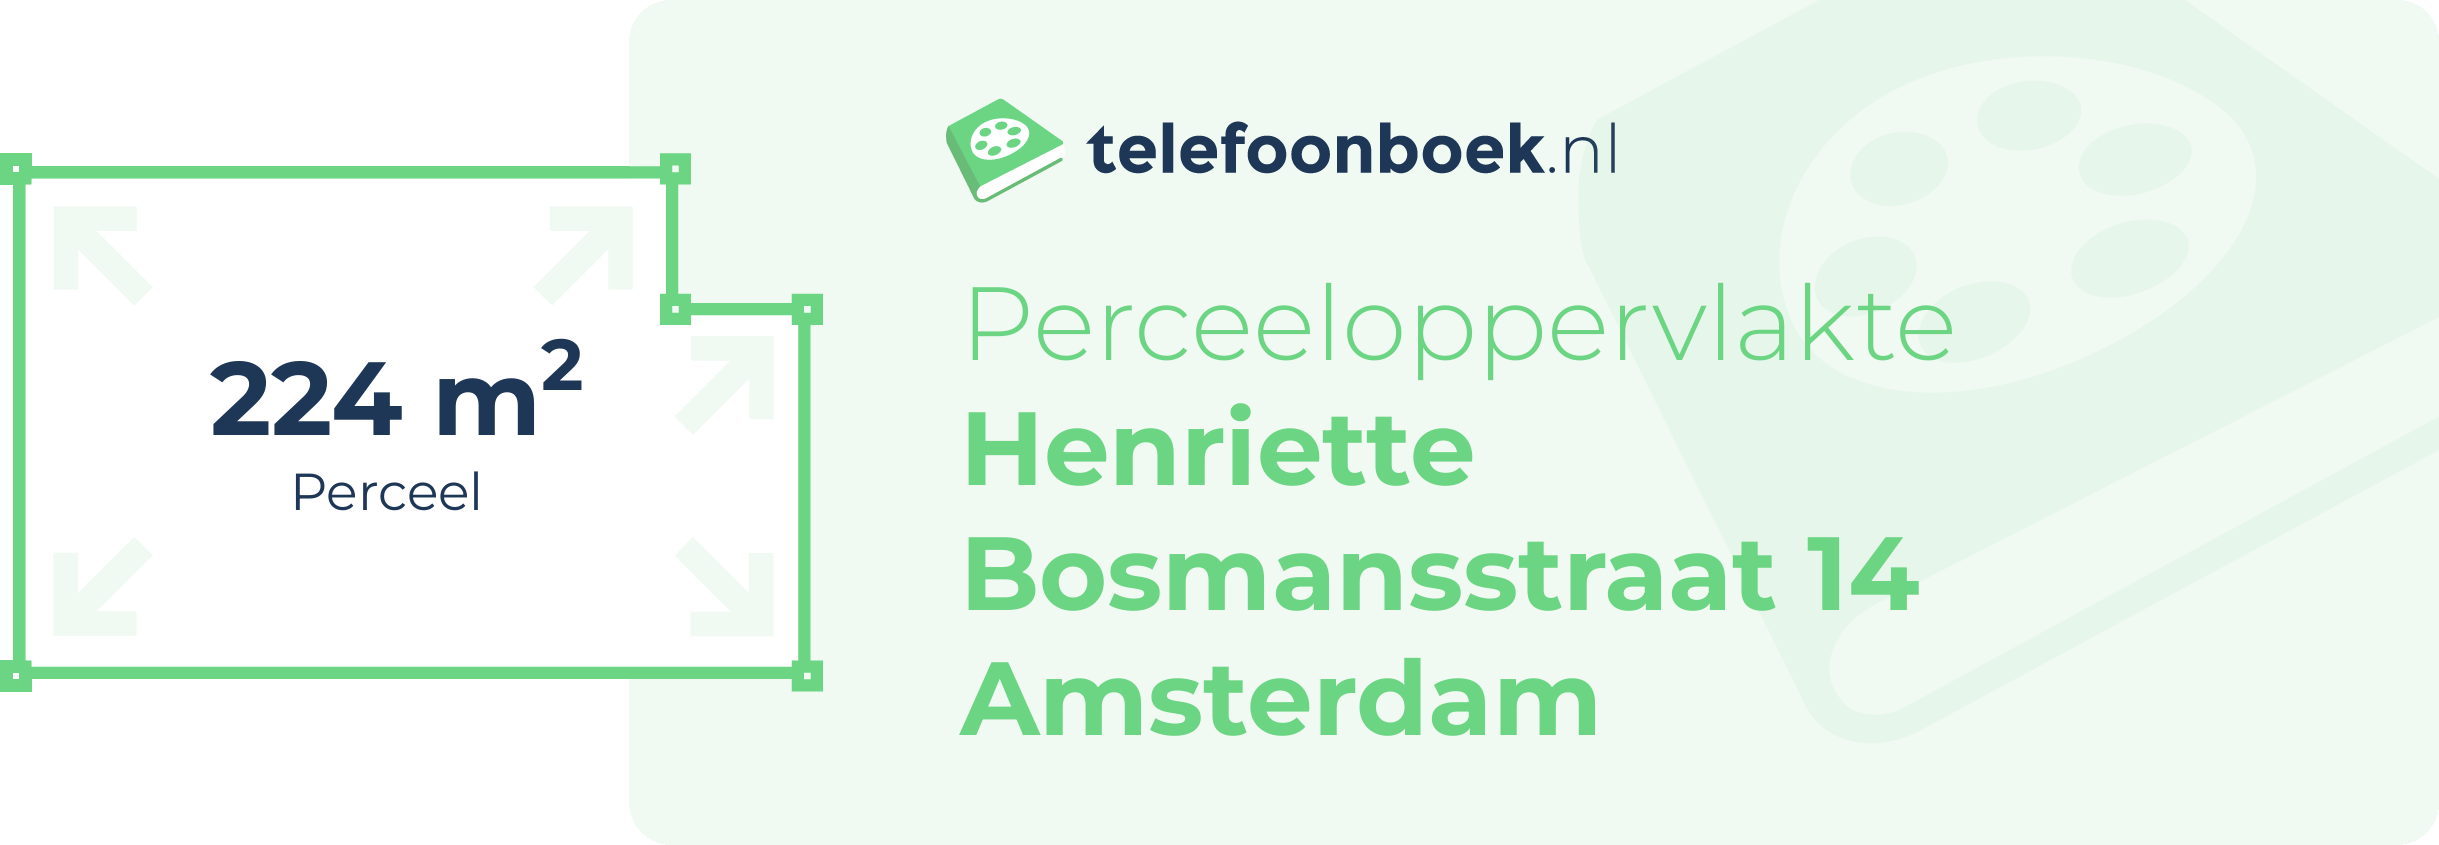 Perceeloppervlakte Henriette Bosmansstraat 14 Amsterdam